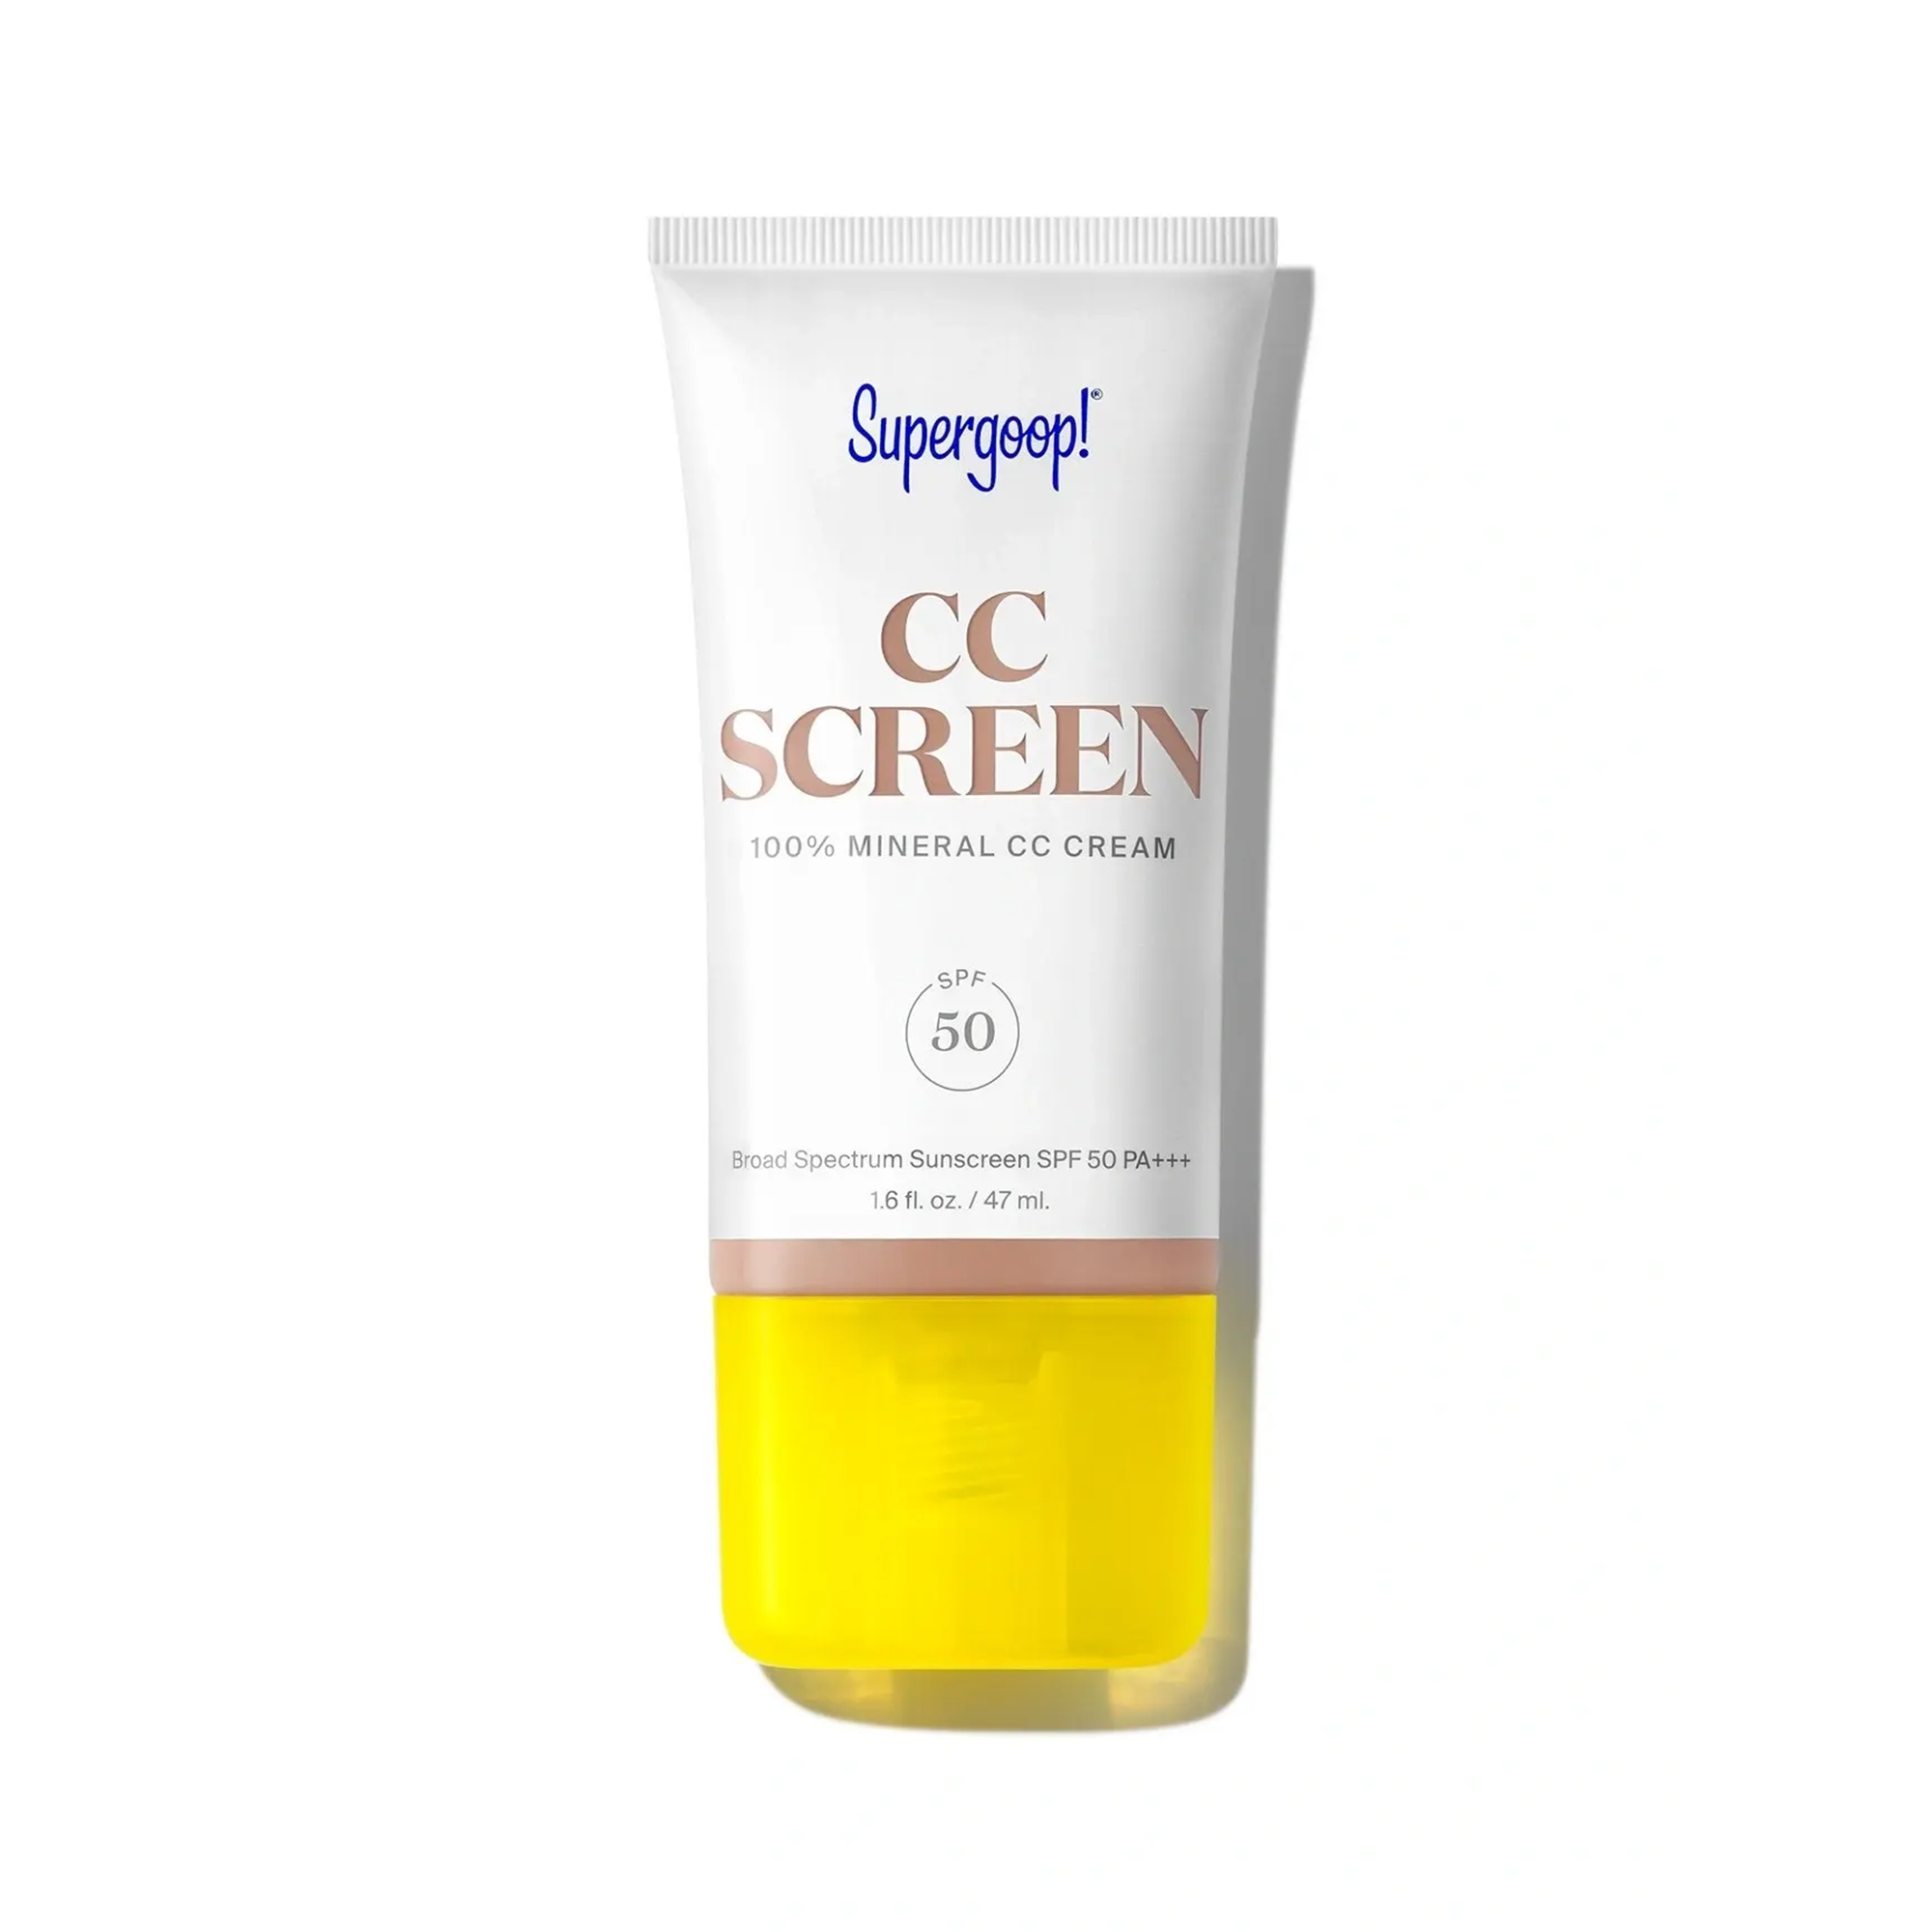 Supergoop! CC Screen 100% Mineral CC Cream SPF 50 / 230C